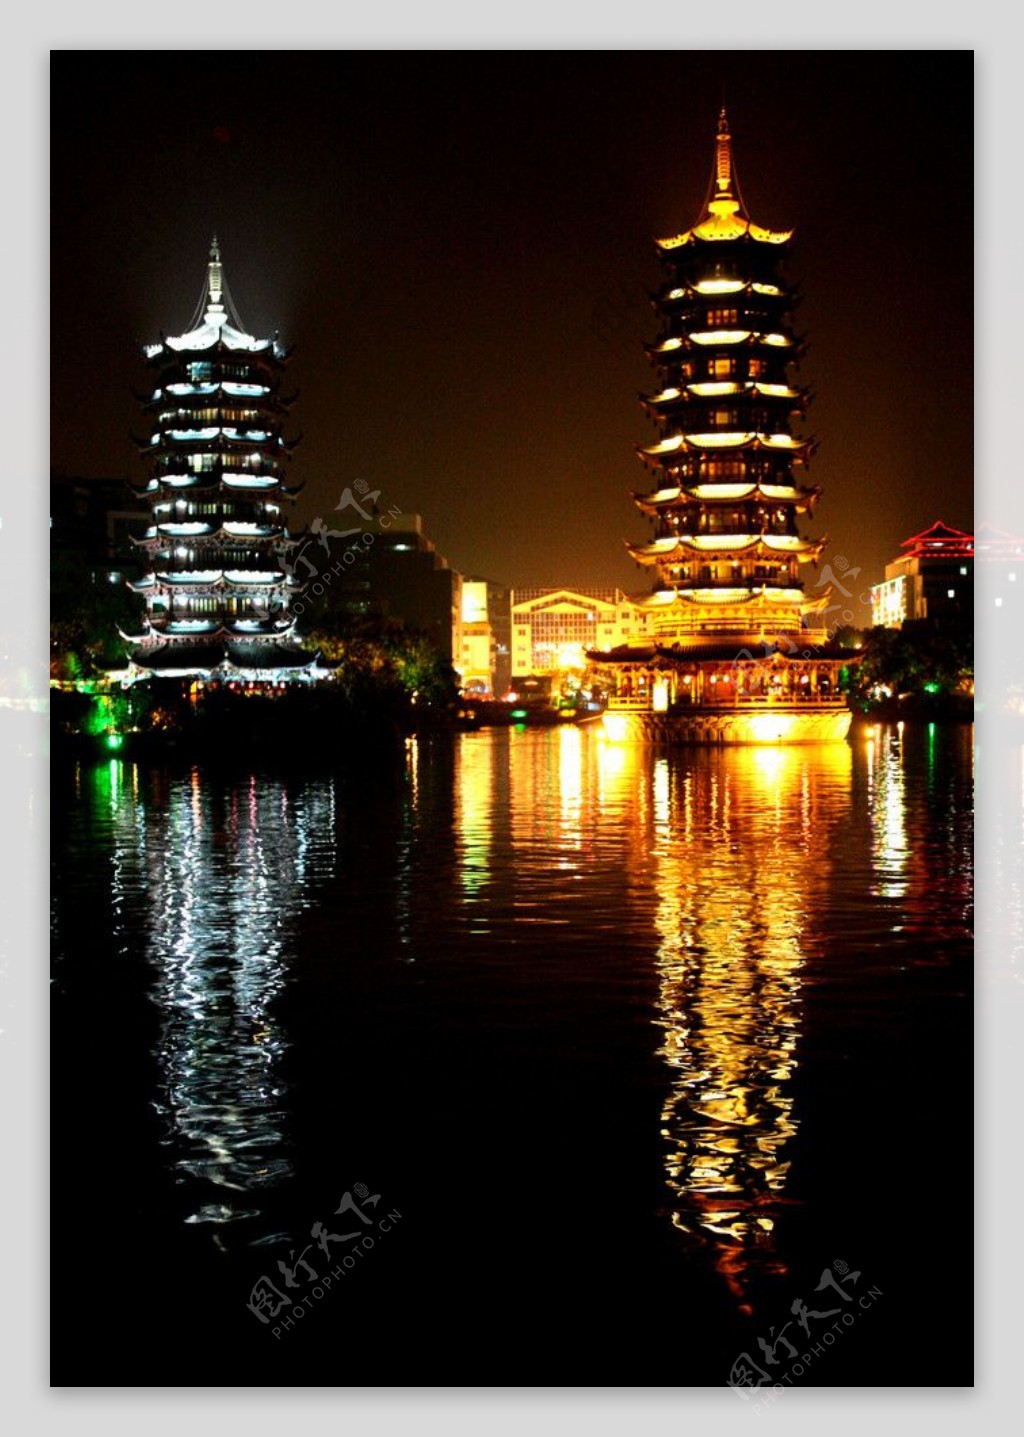 桂林夜景图片